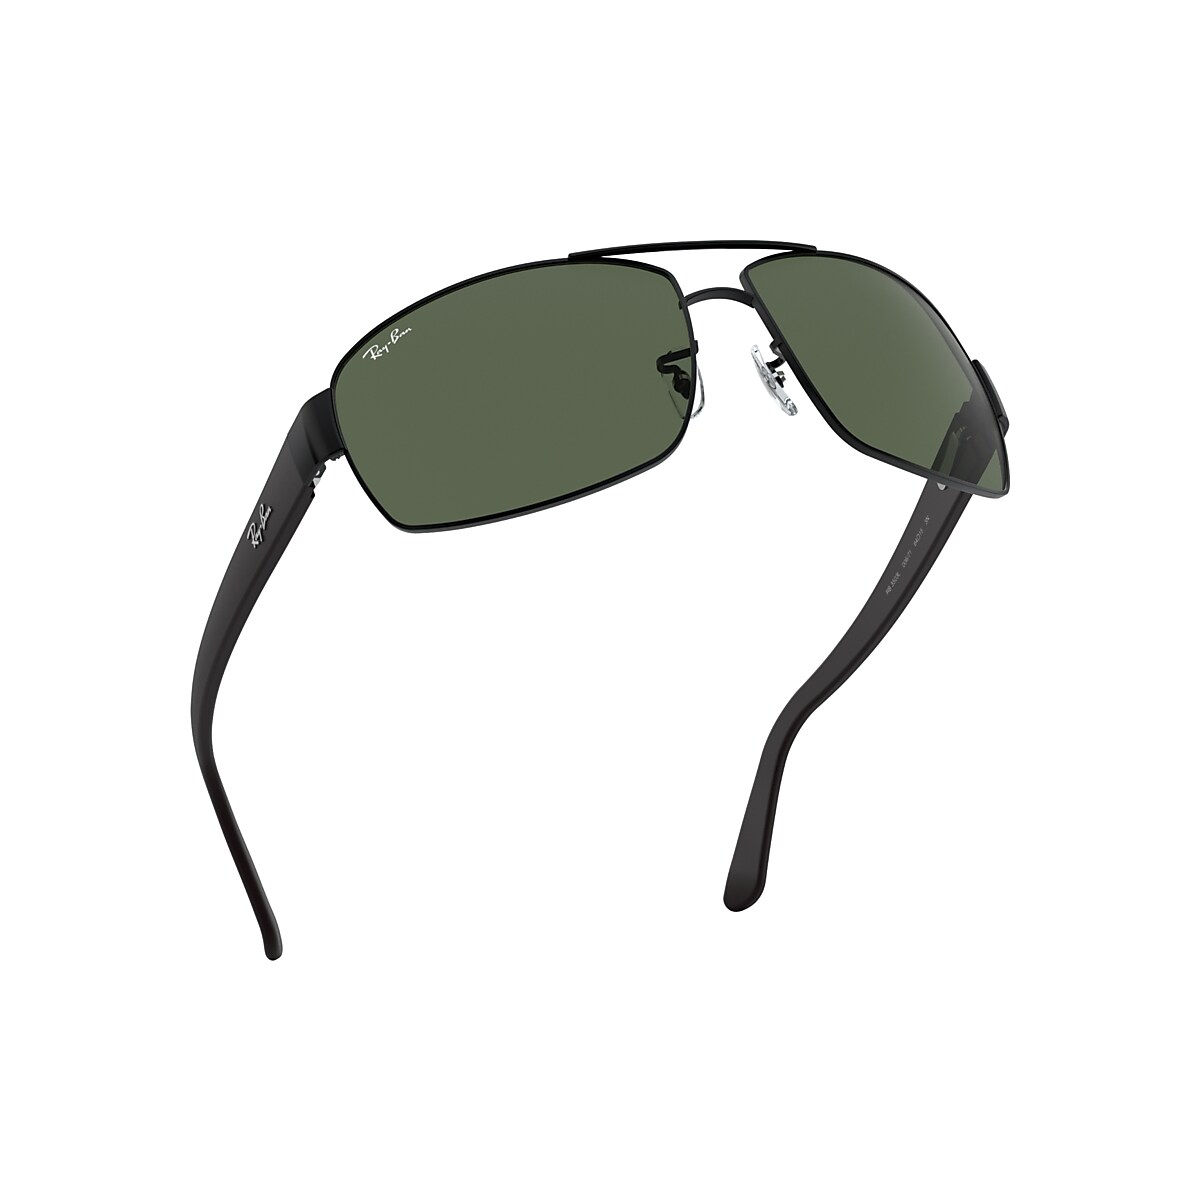 Óculos de Sol RB3503 em Preto e Verde - RB3503L